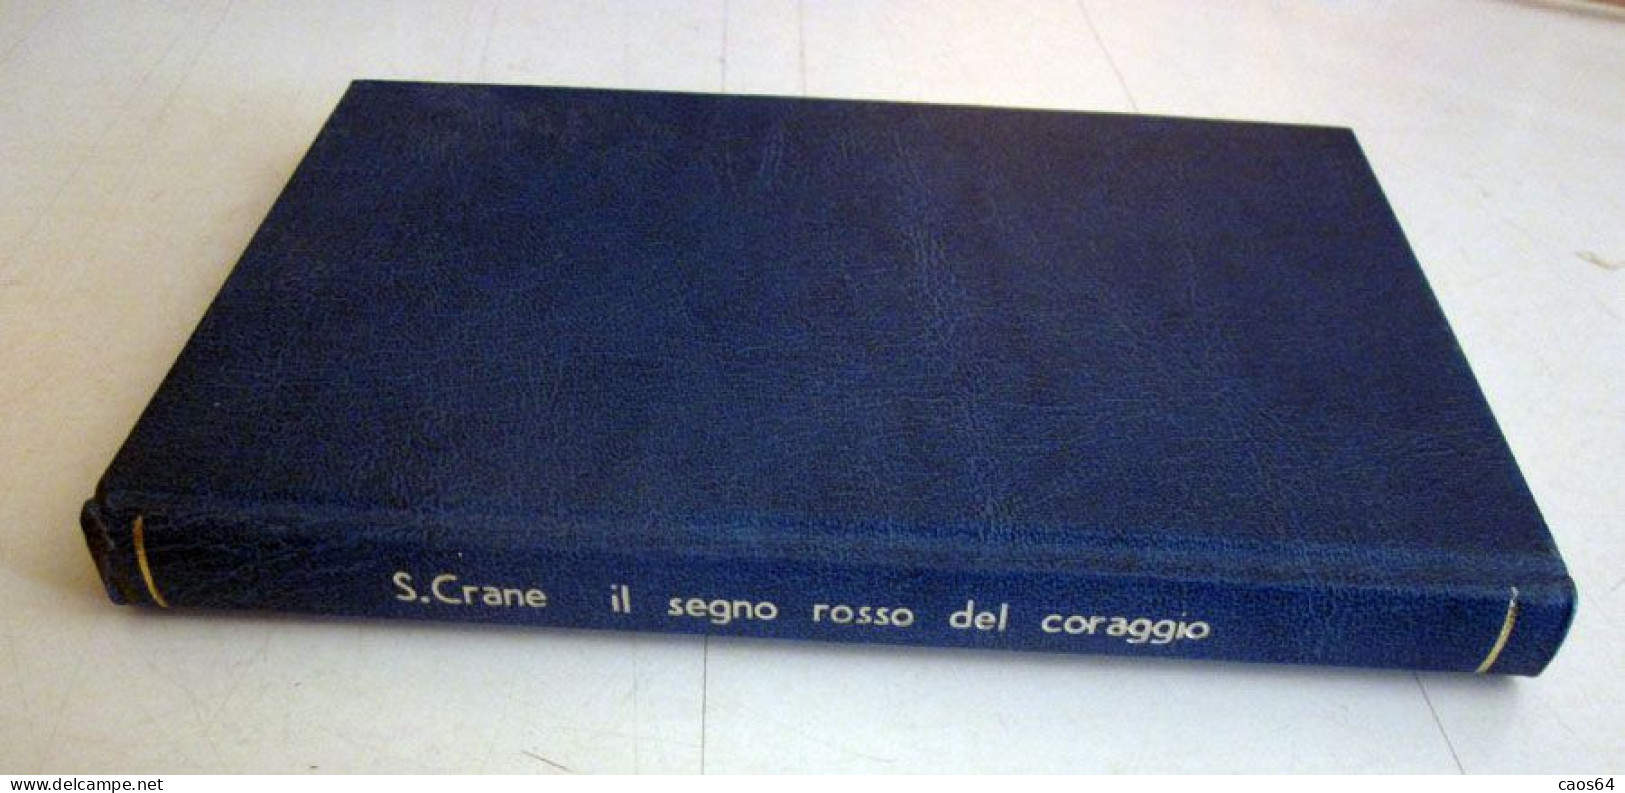 Il Segno Rosso Del Coraggio Stephen Crane Rizzoli BUR 1951 - Klassik